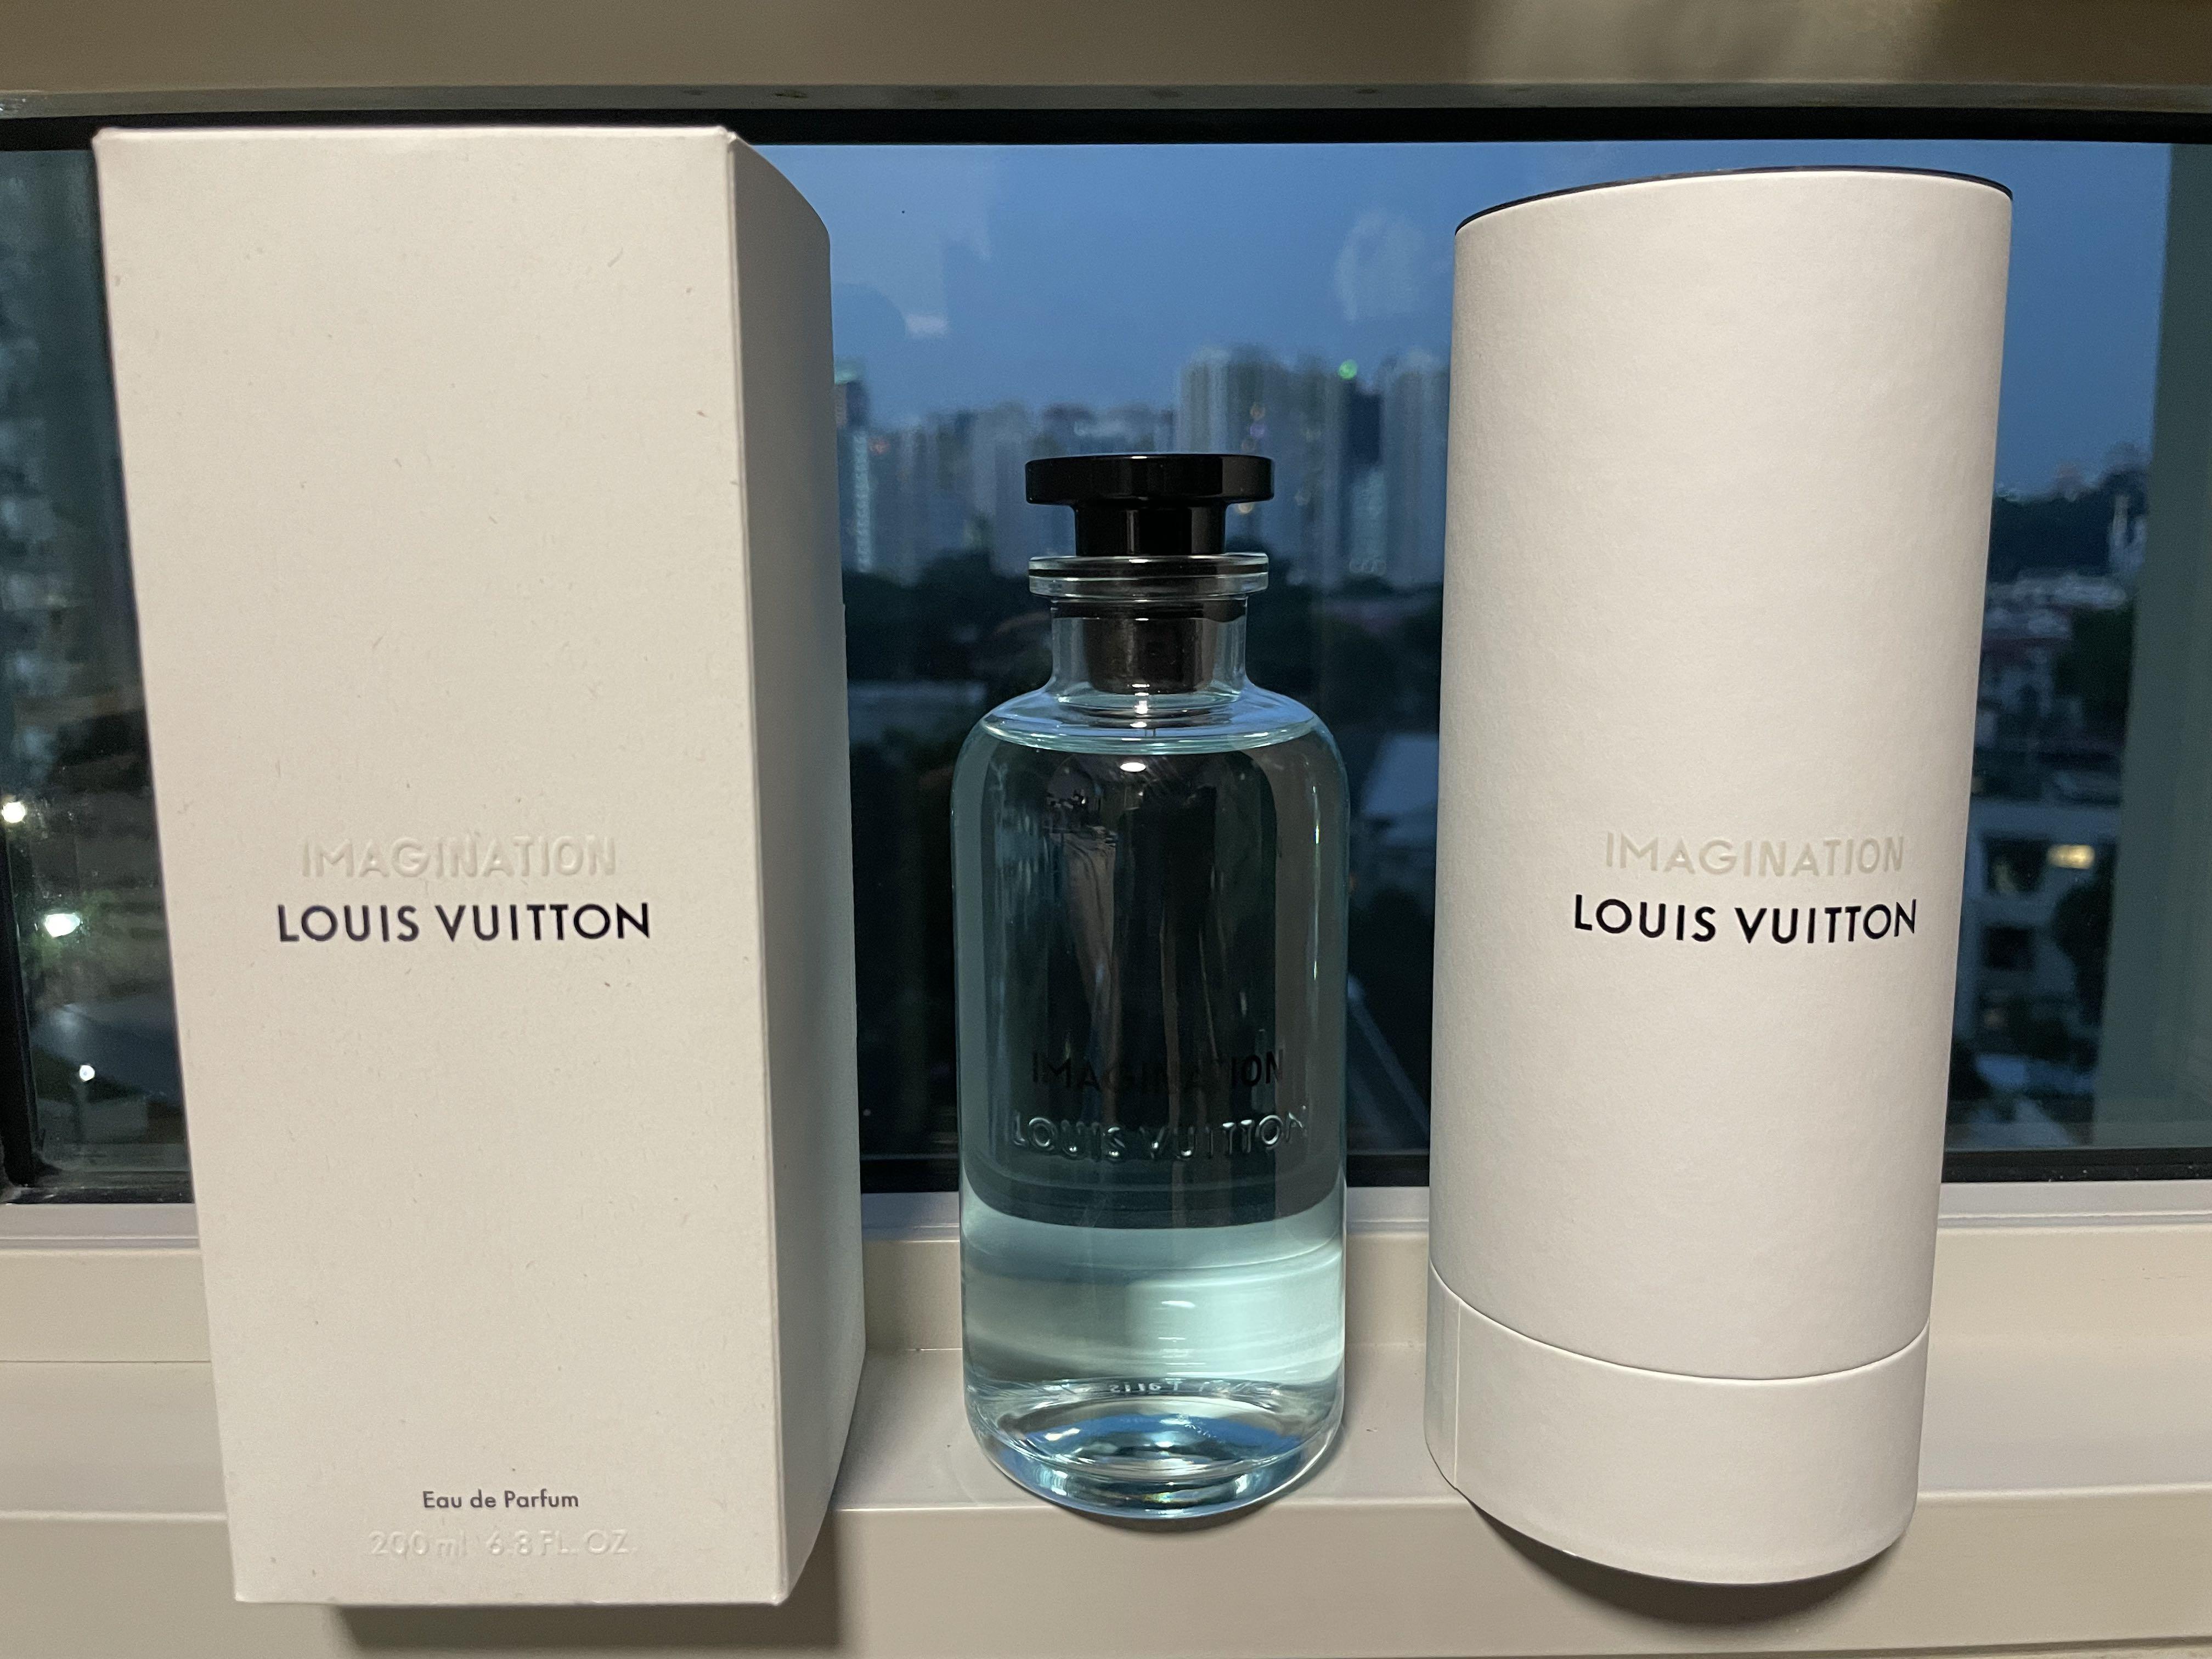 Louis Vuitton Imagination Fragrance unboxing 